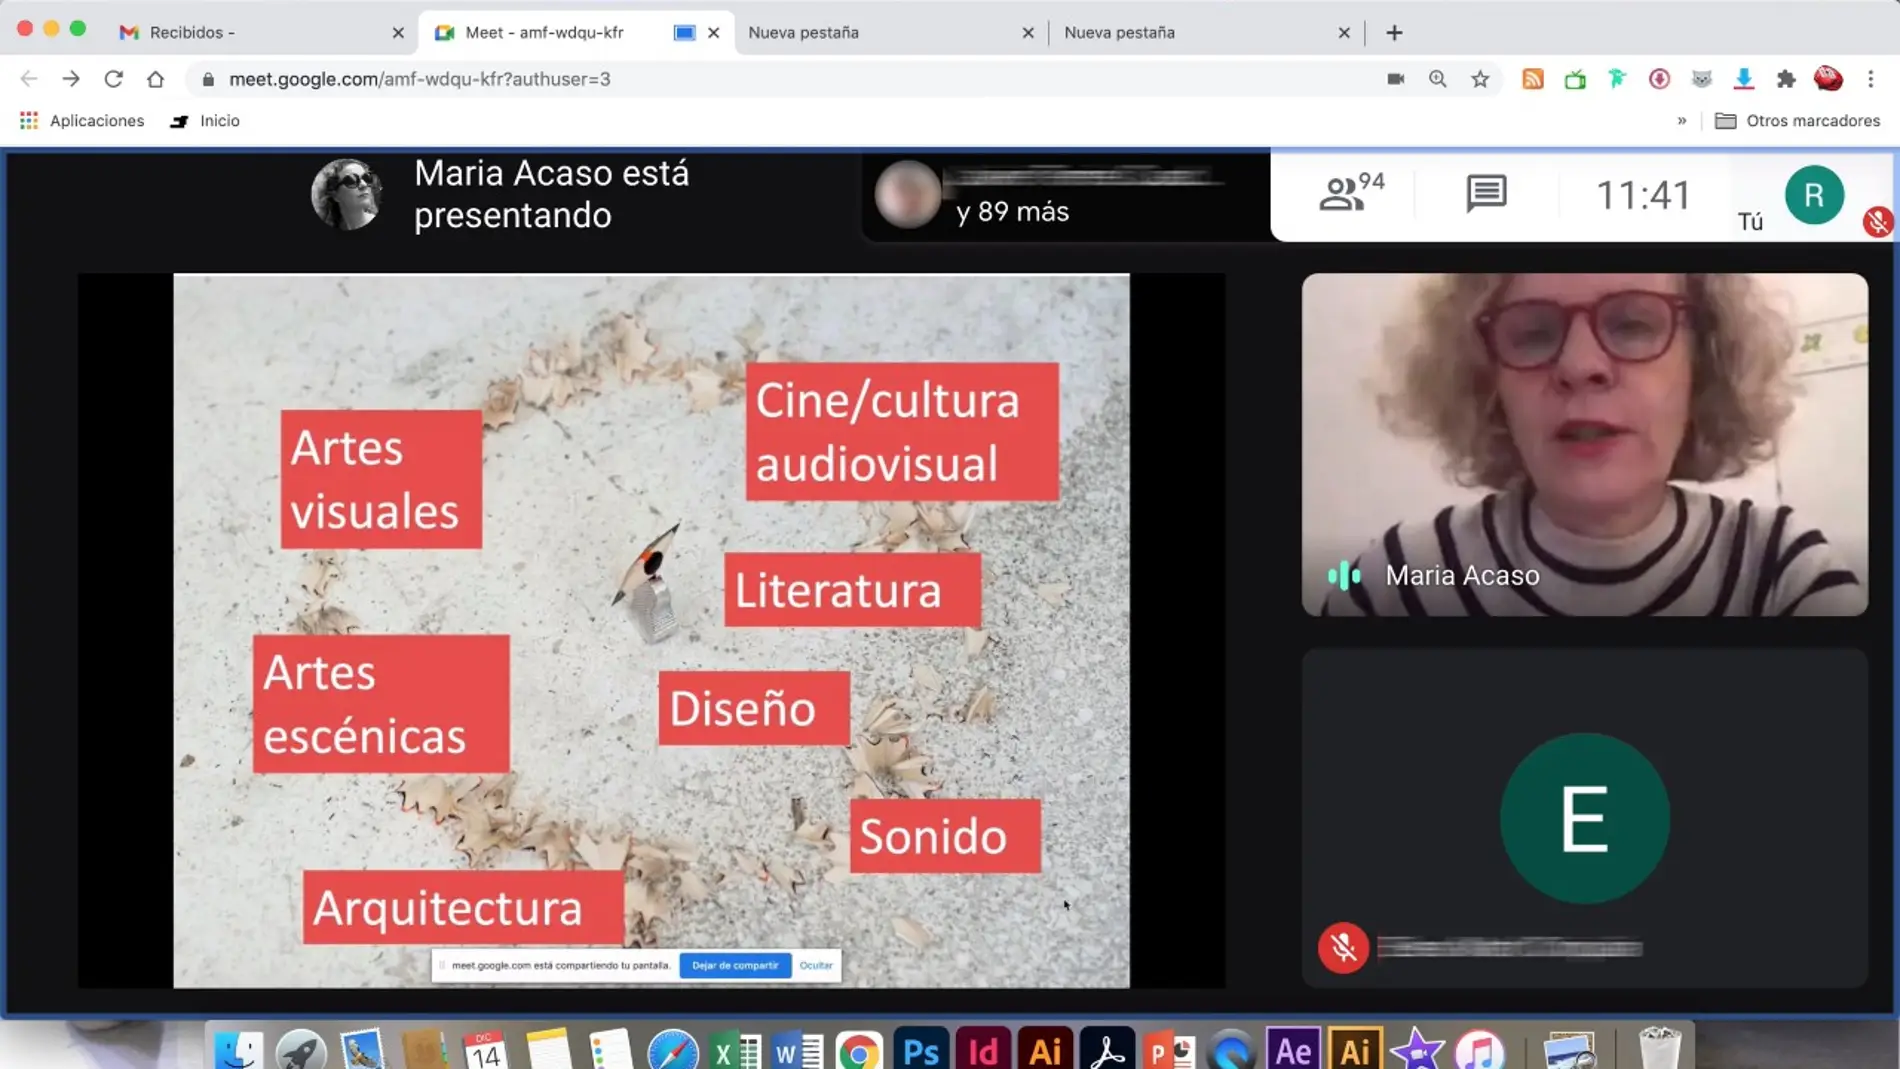 María Acaso es una productora cultural cuyos proyectos se centran en desarrollar una educación contemporánea y en transformar los formatos de transmisión del conocimiento 